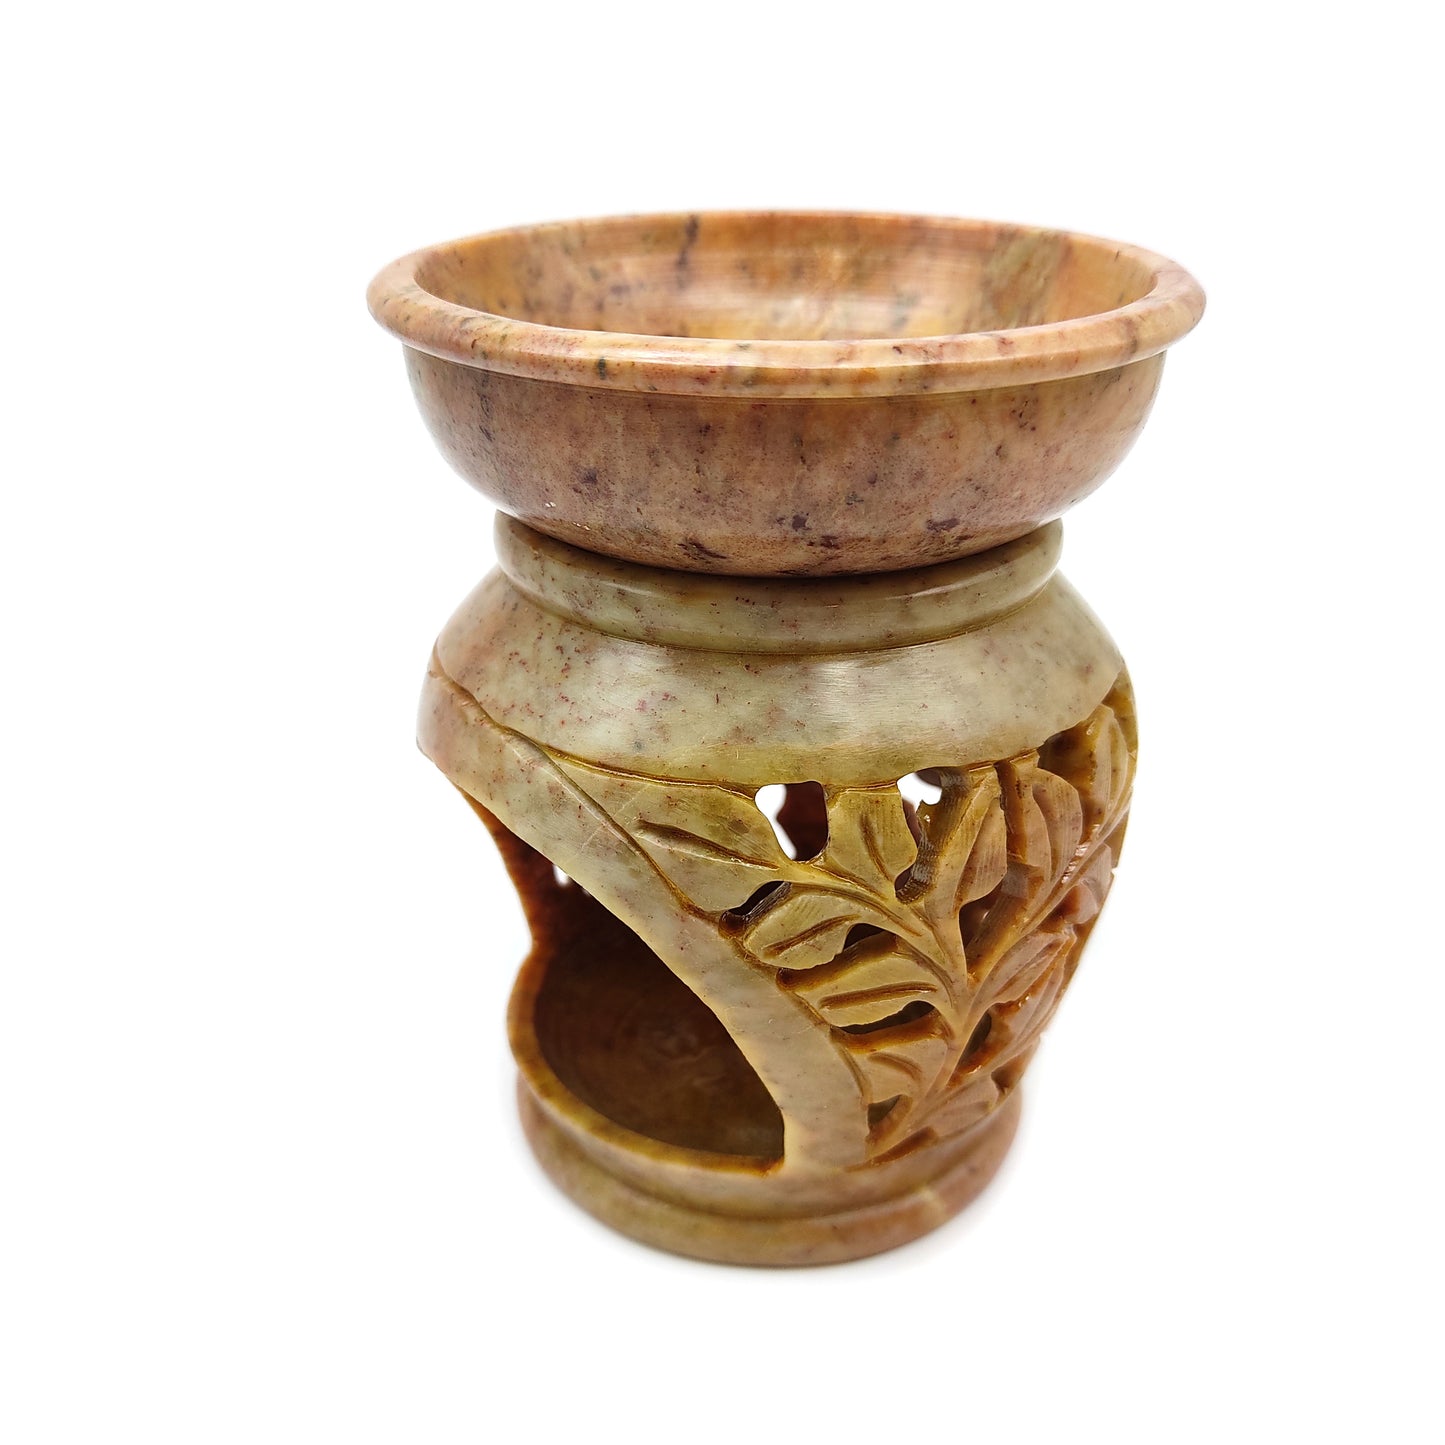 Oil Diffuser Oil Warmer Burner India Soapstone Hand-carved Leaf Flower Design 4.5"